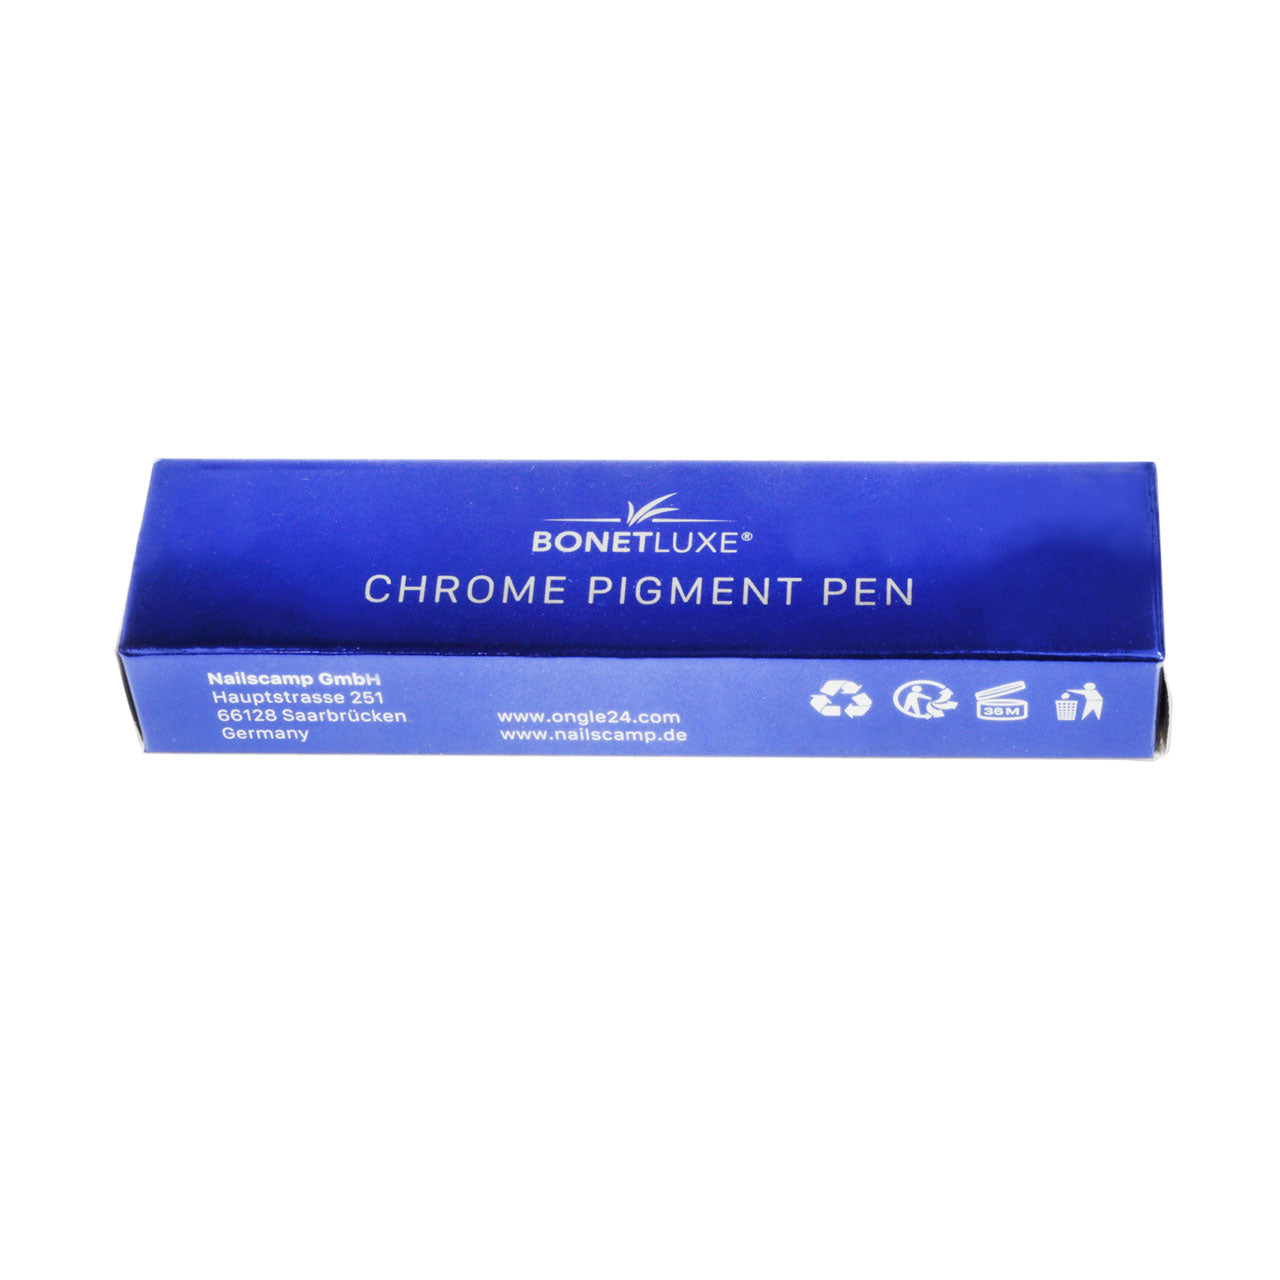 Chrome Pigment Pen Silver